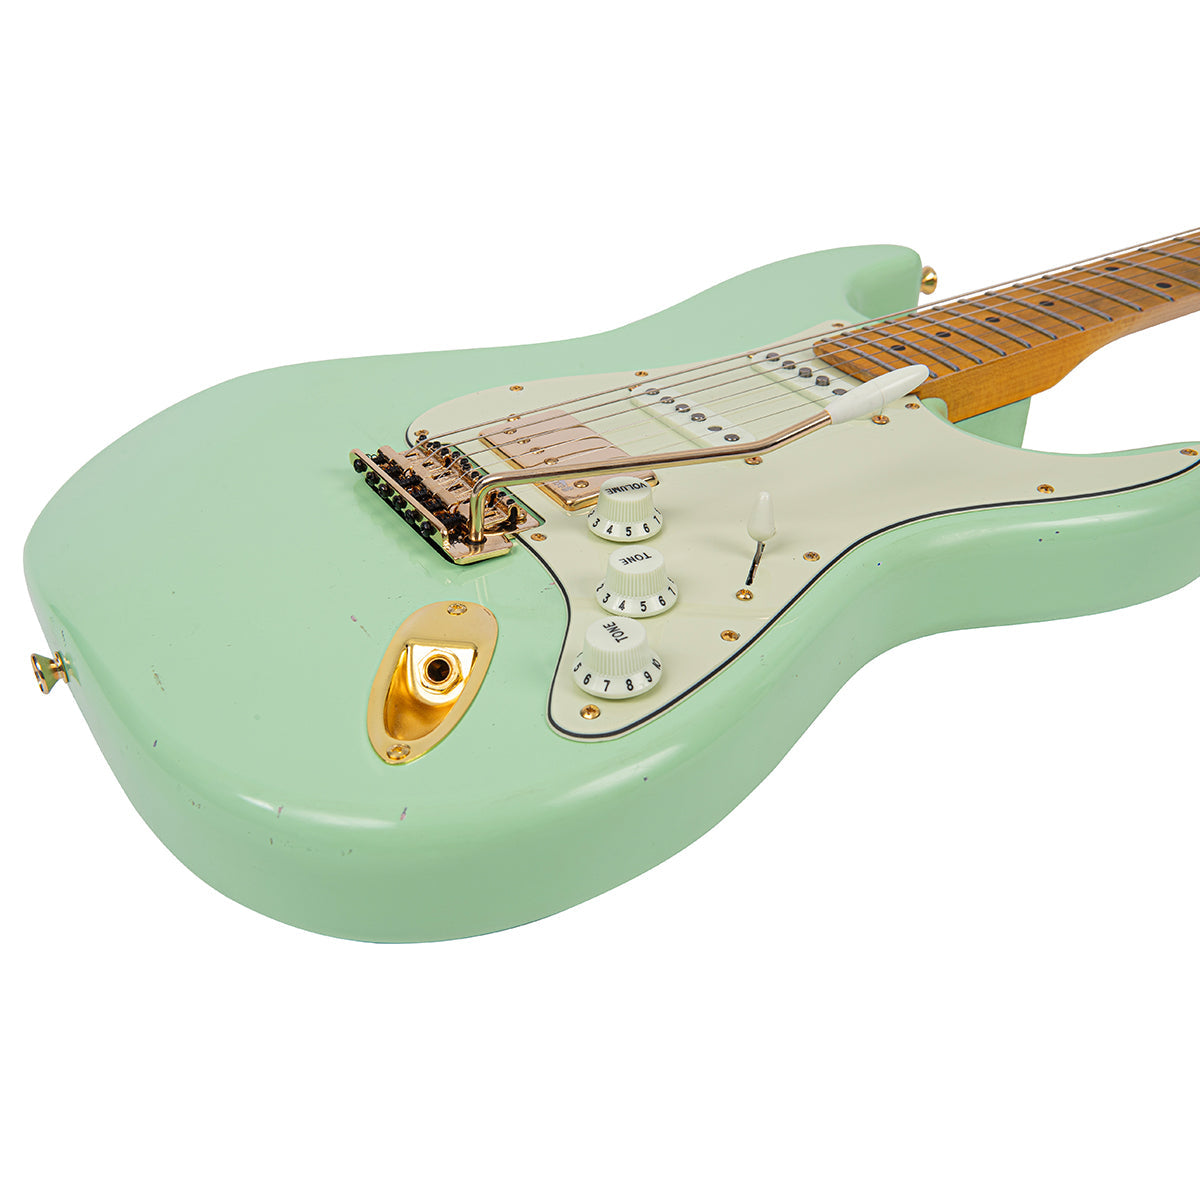 SOLD - Vintage V6 ProShop Custom Build ~ Light Distressing Surf Green, Electrics for sale at Richards Guitars.